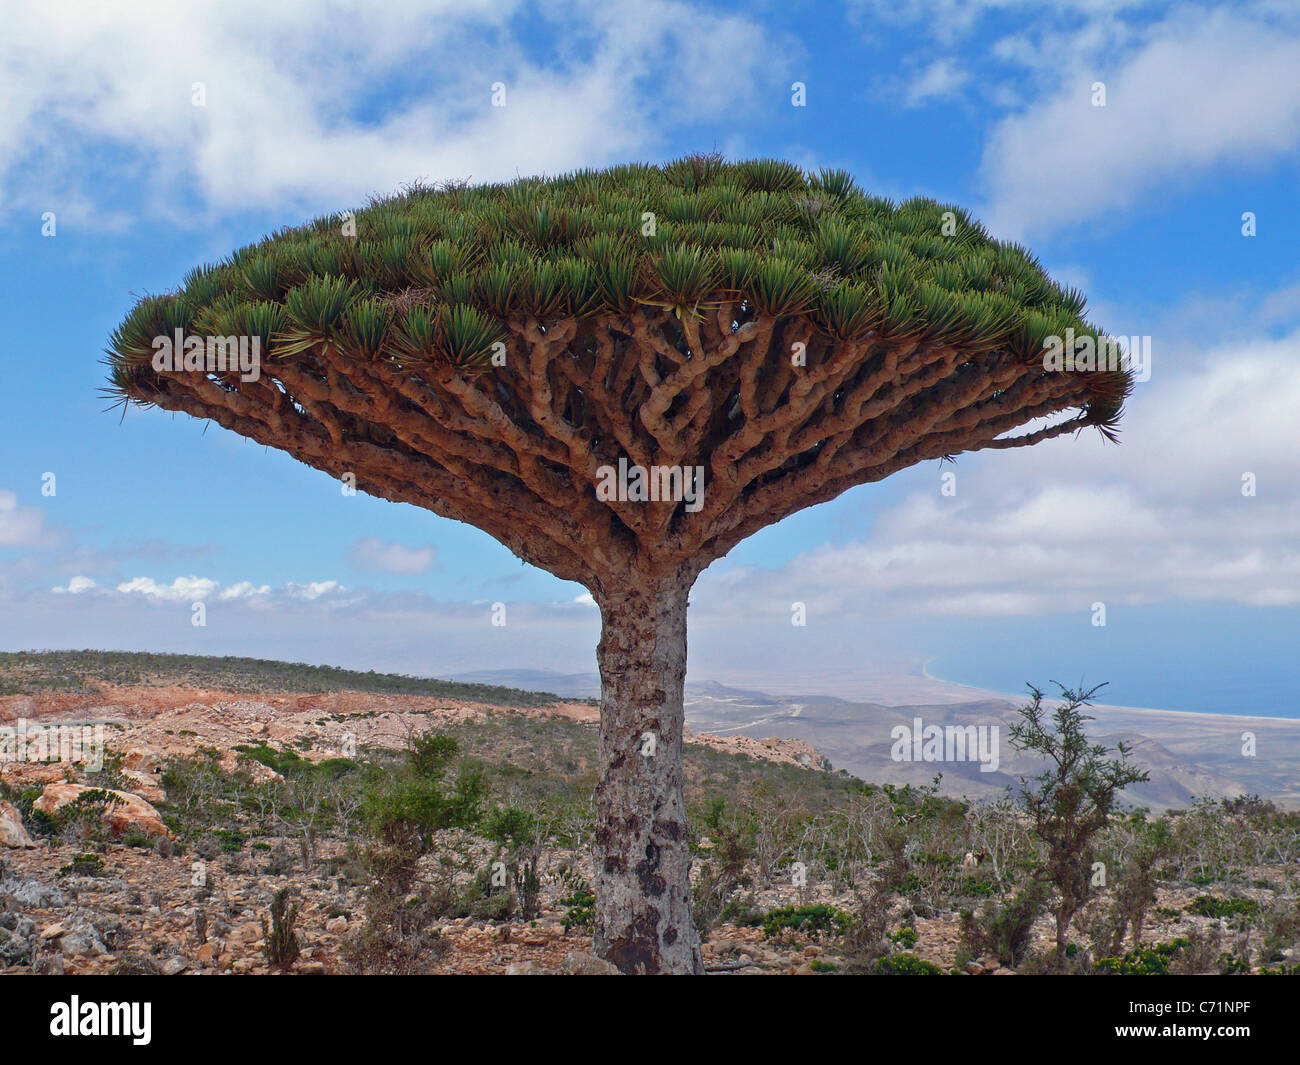 Drachenblutbaum (Dracaena cinnabari), Socotra, Jemen Stockfotografie - Alamy